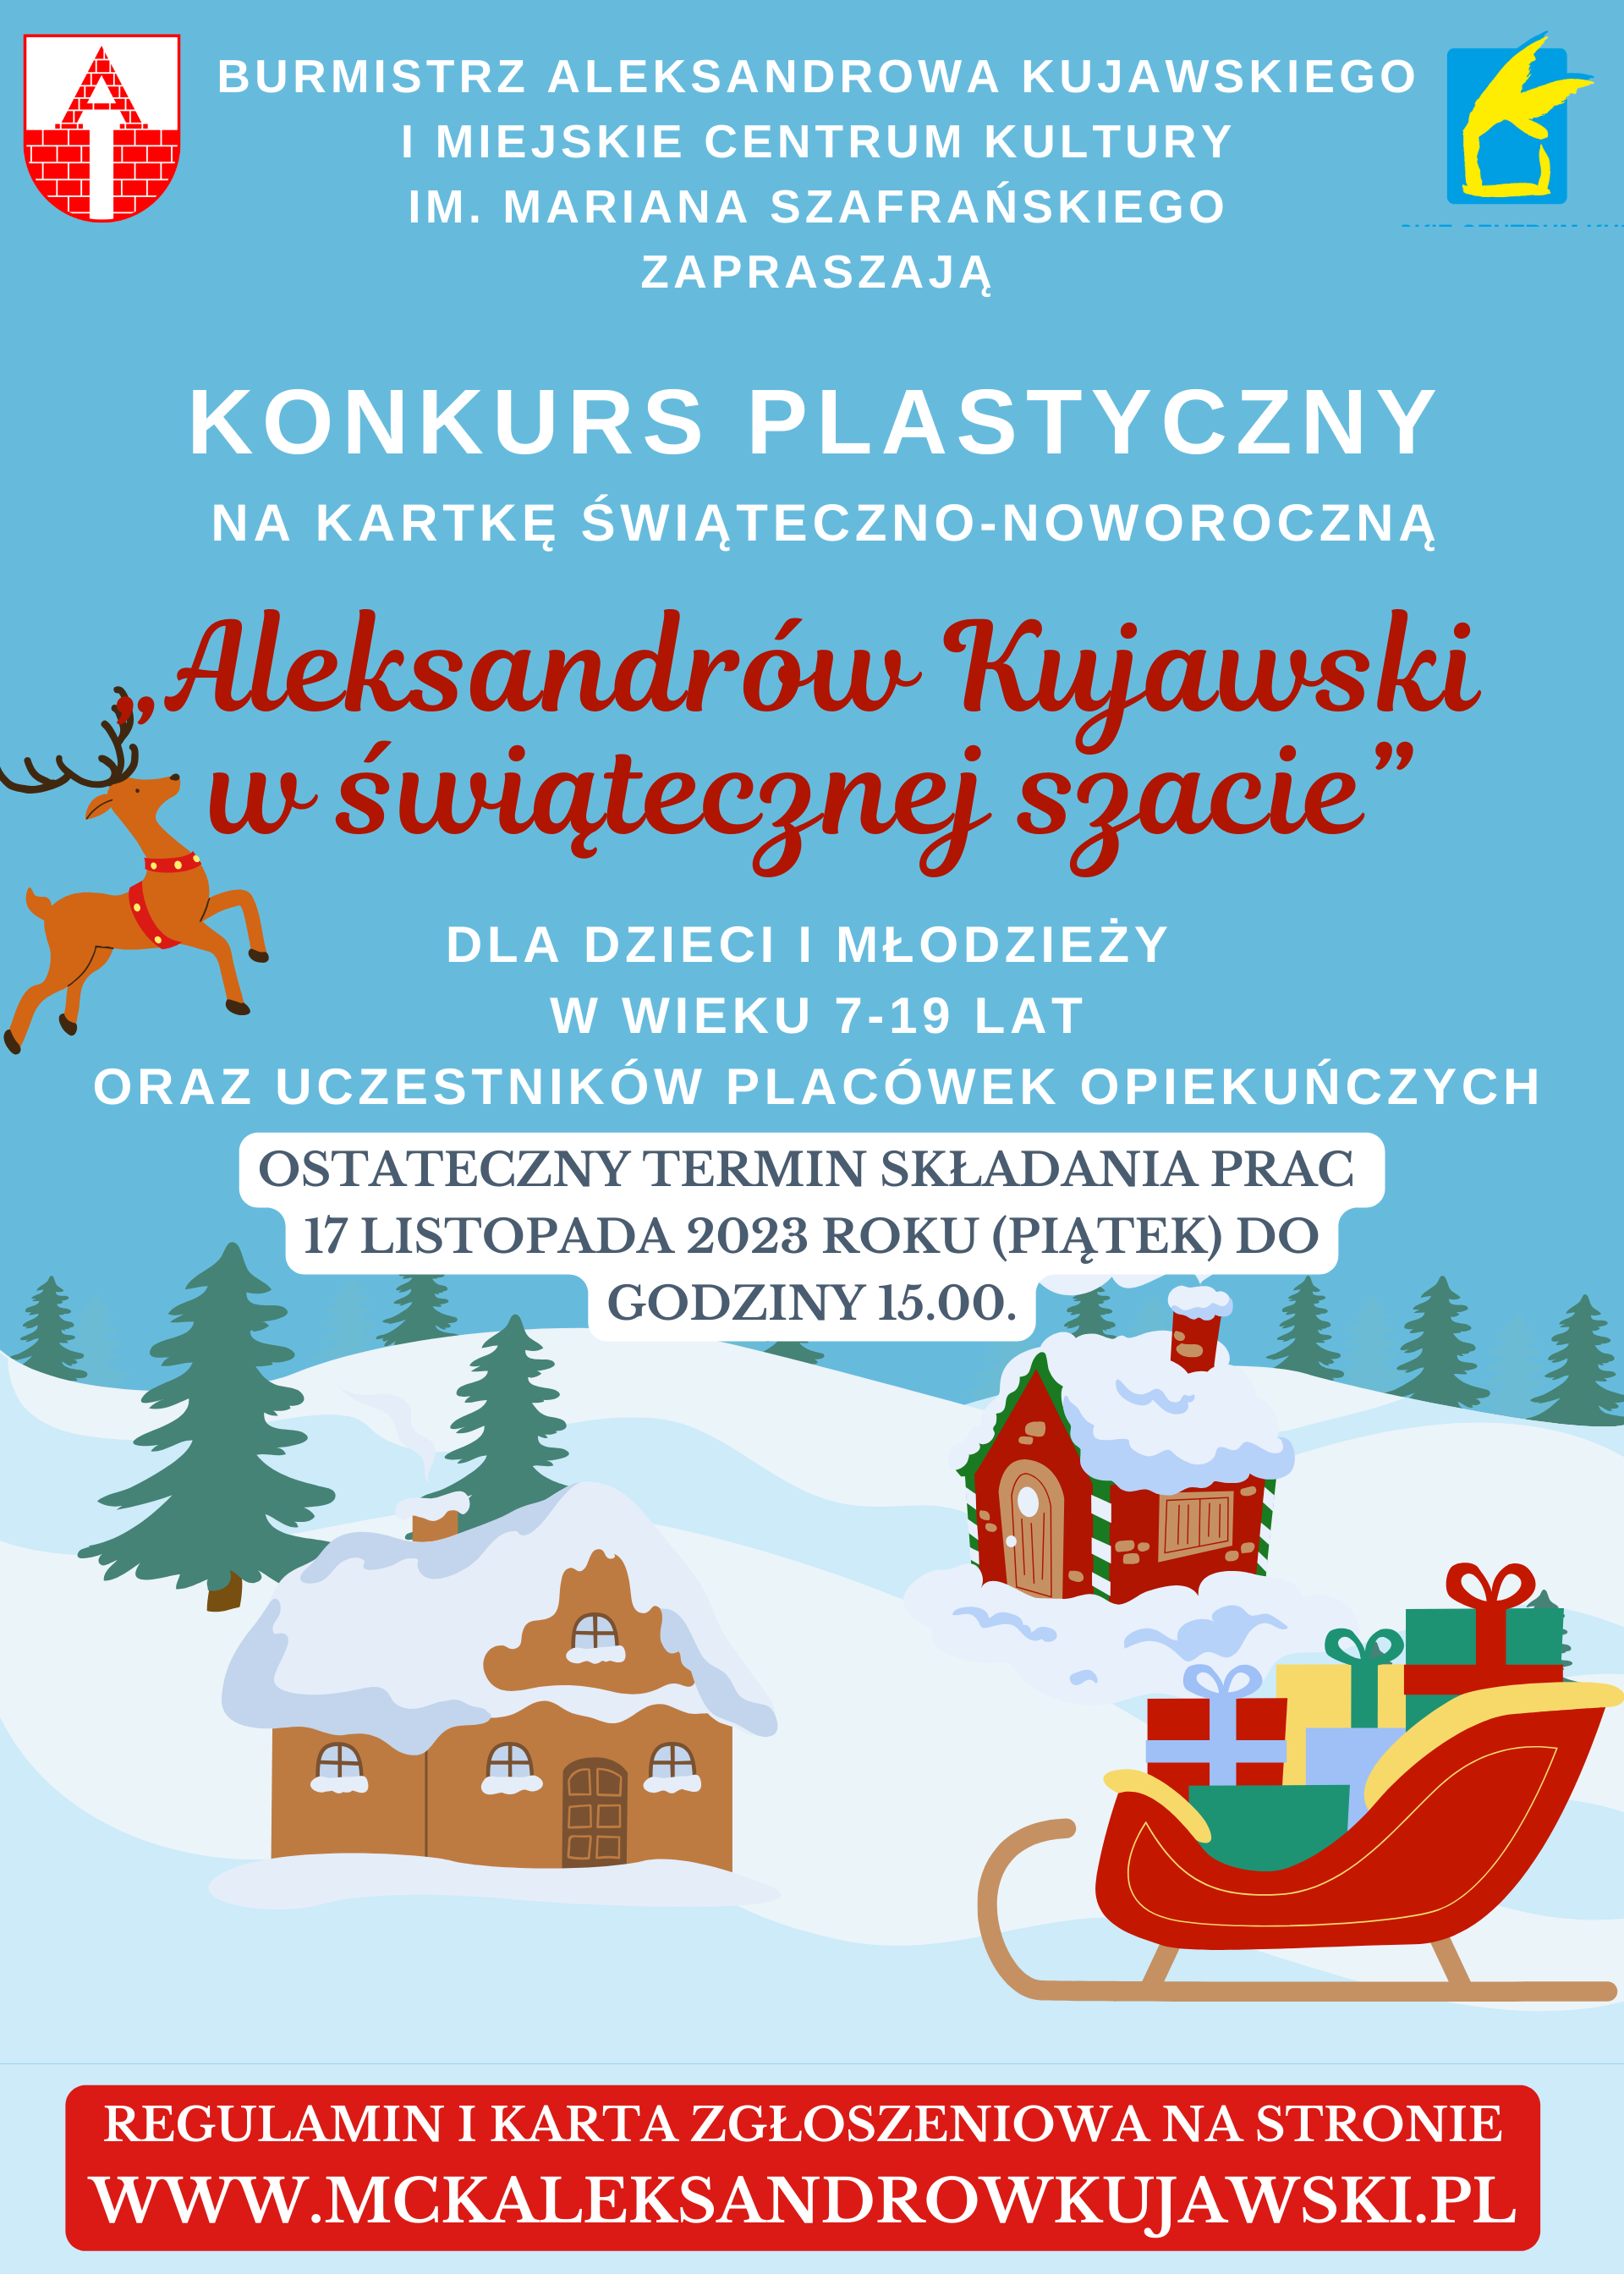 Konkurs plastyczny na kartkę świąteczno-noworoczną „Aleksandrów Kujawski w świątecznej szacie” 2023